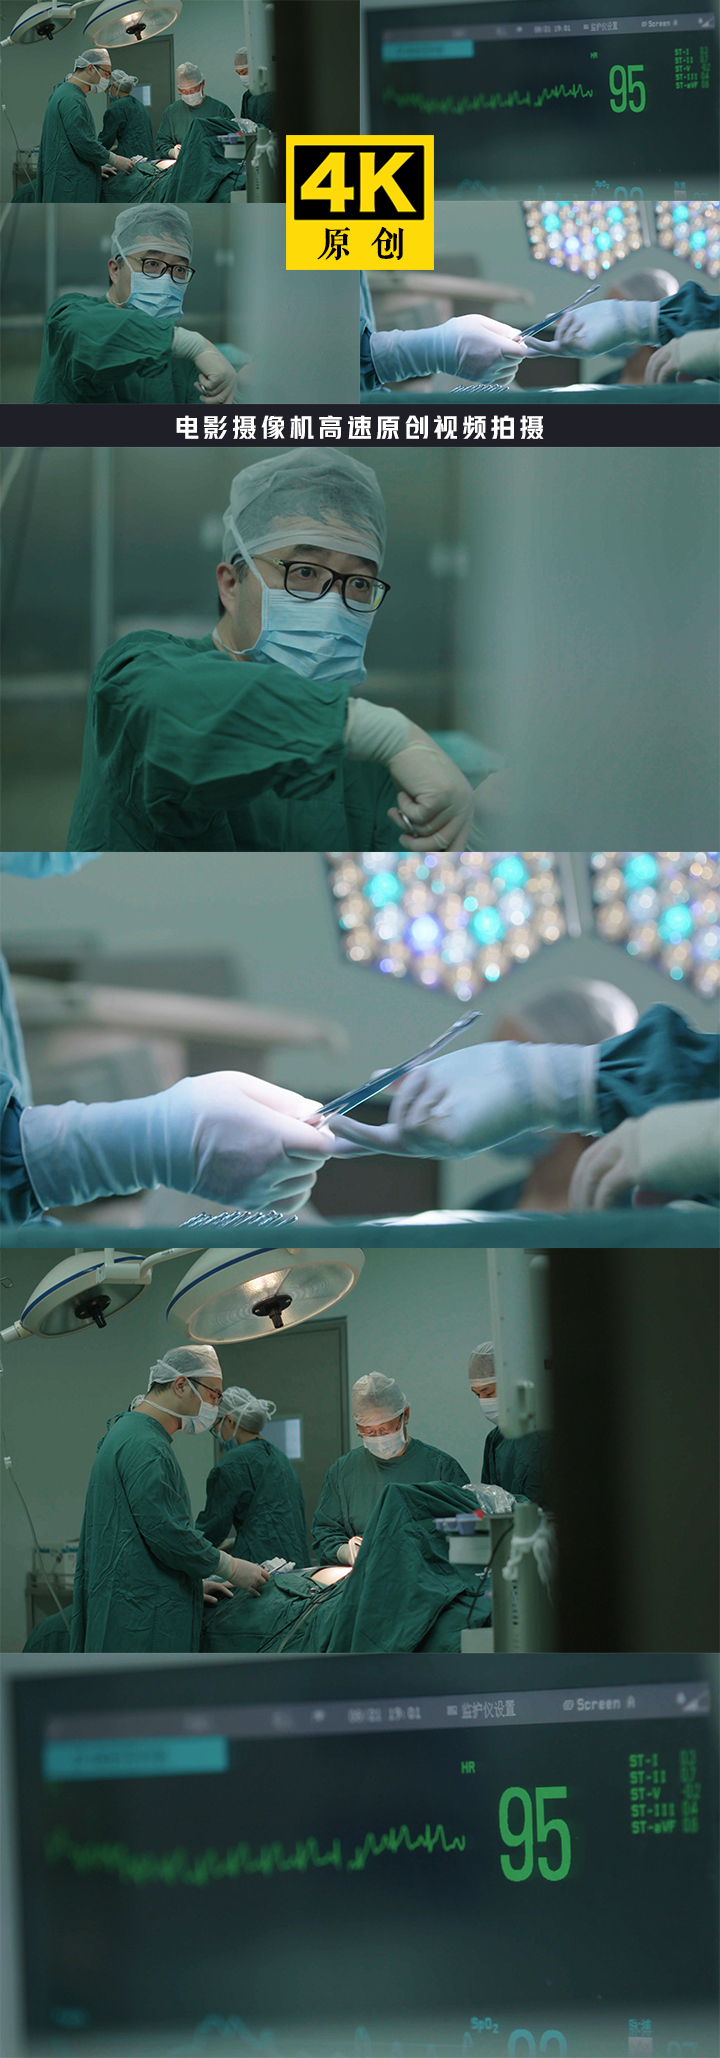 医院手术合集 手术手术台手术刀医院医药